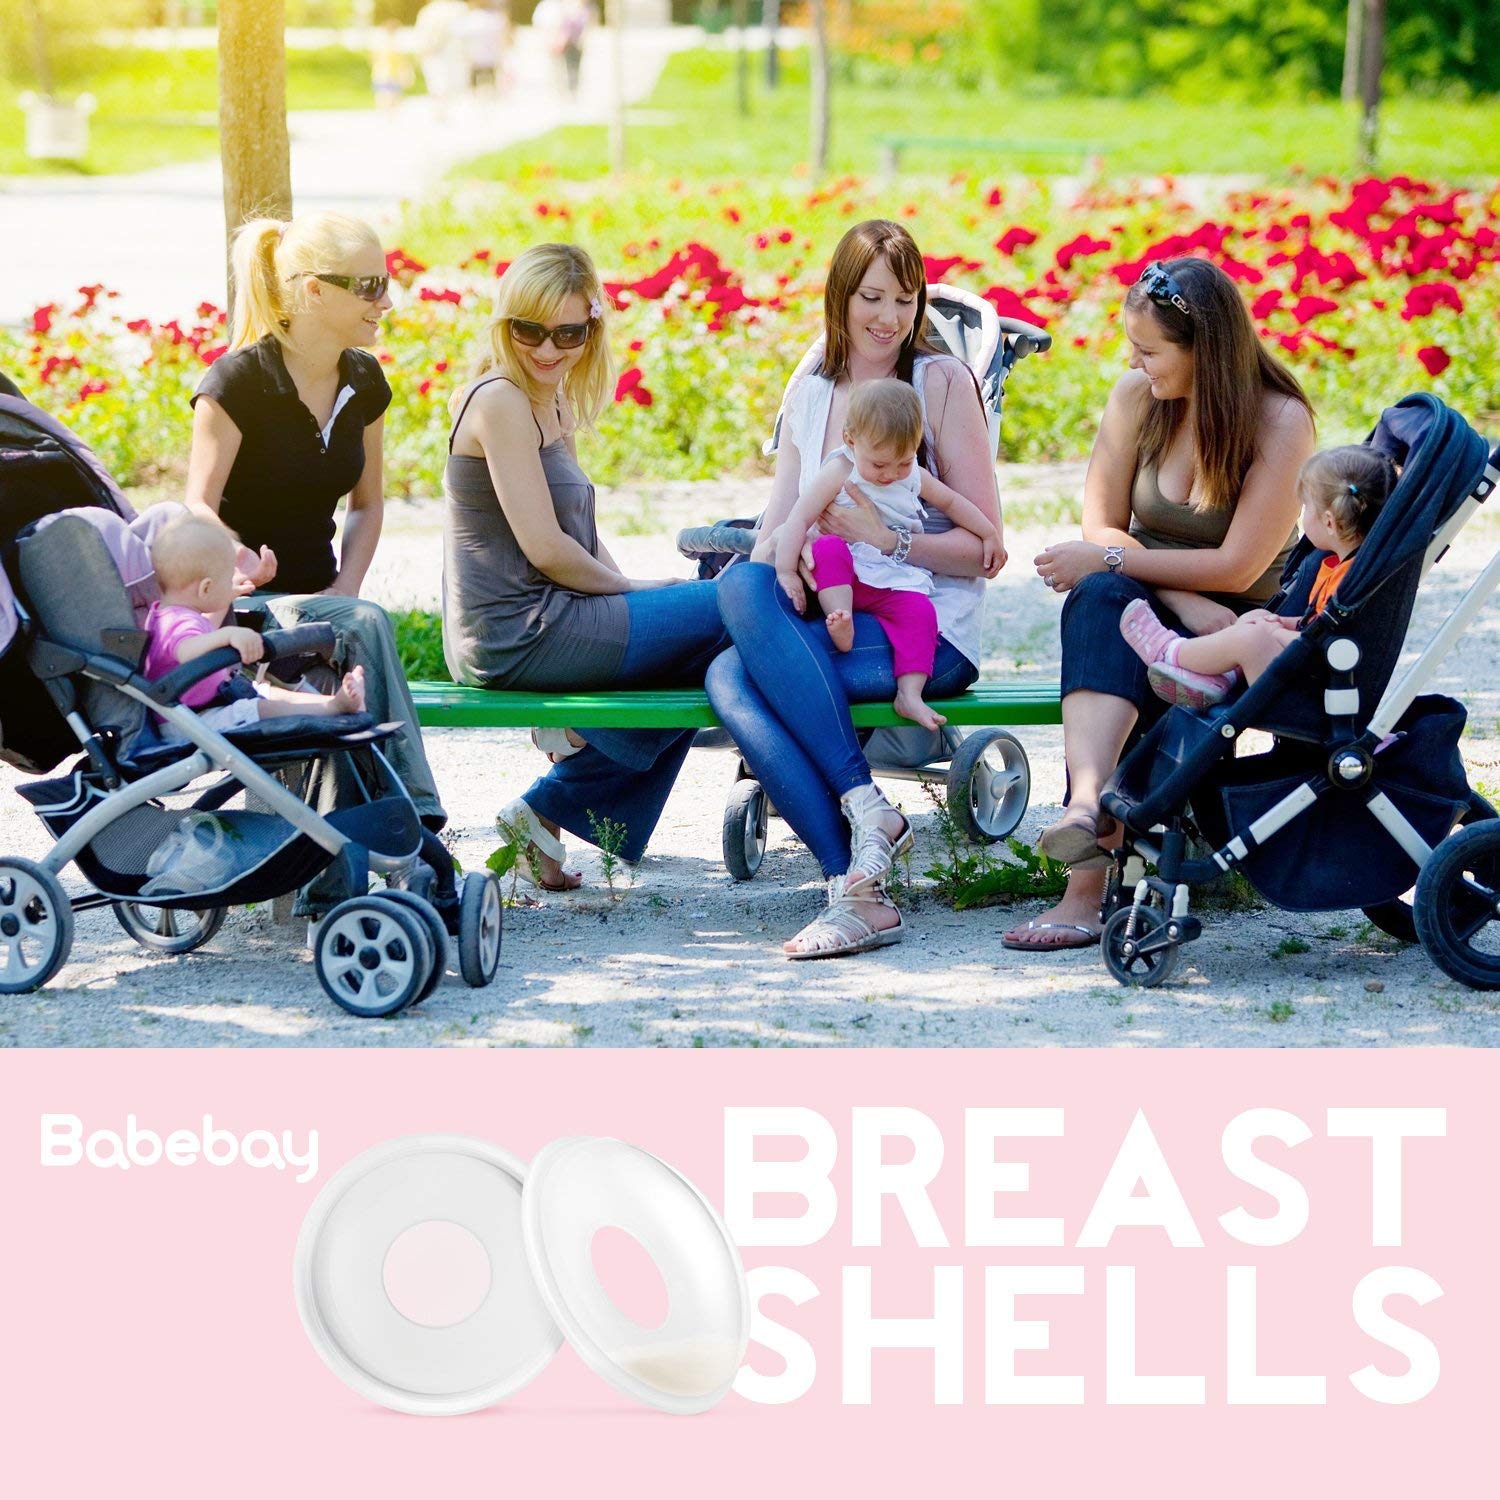 Babebay Breast Shells Nursing Cups